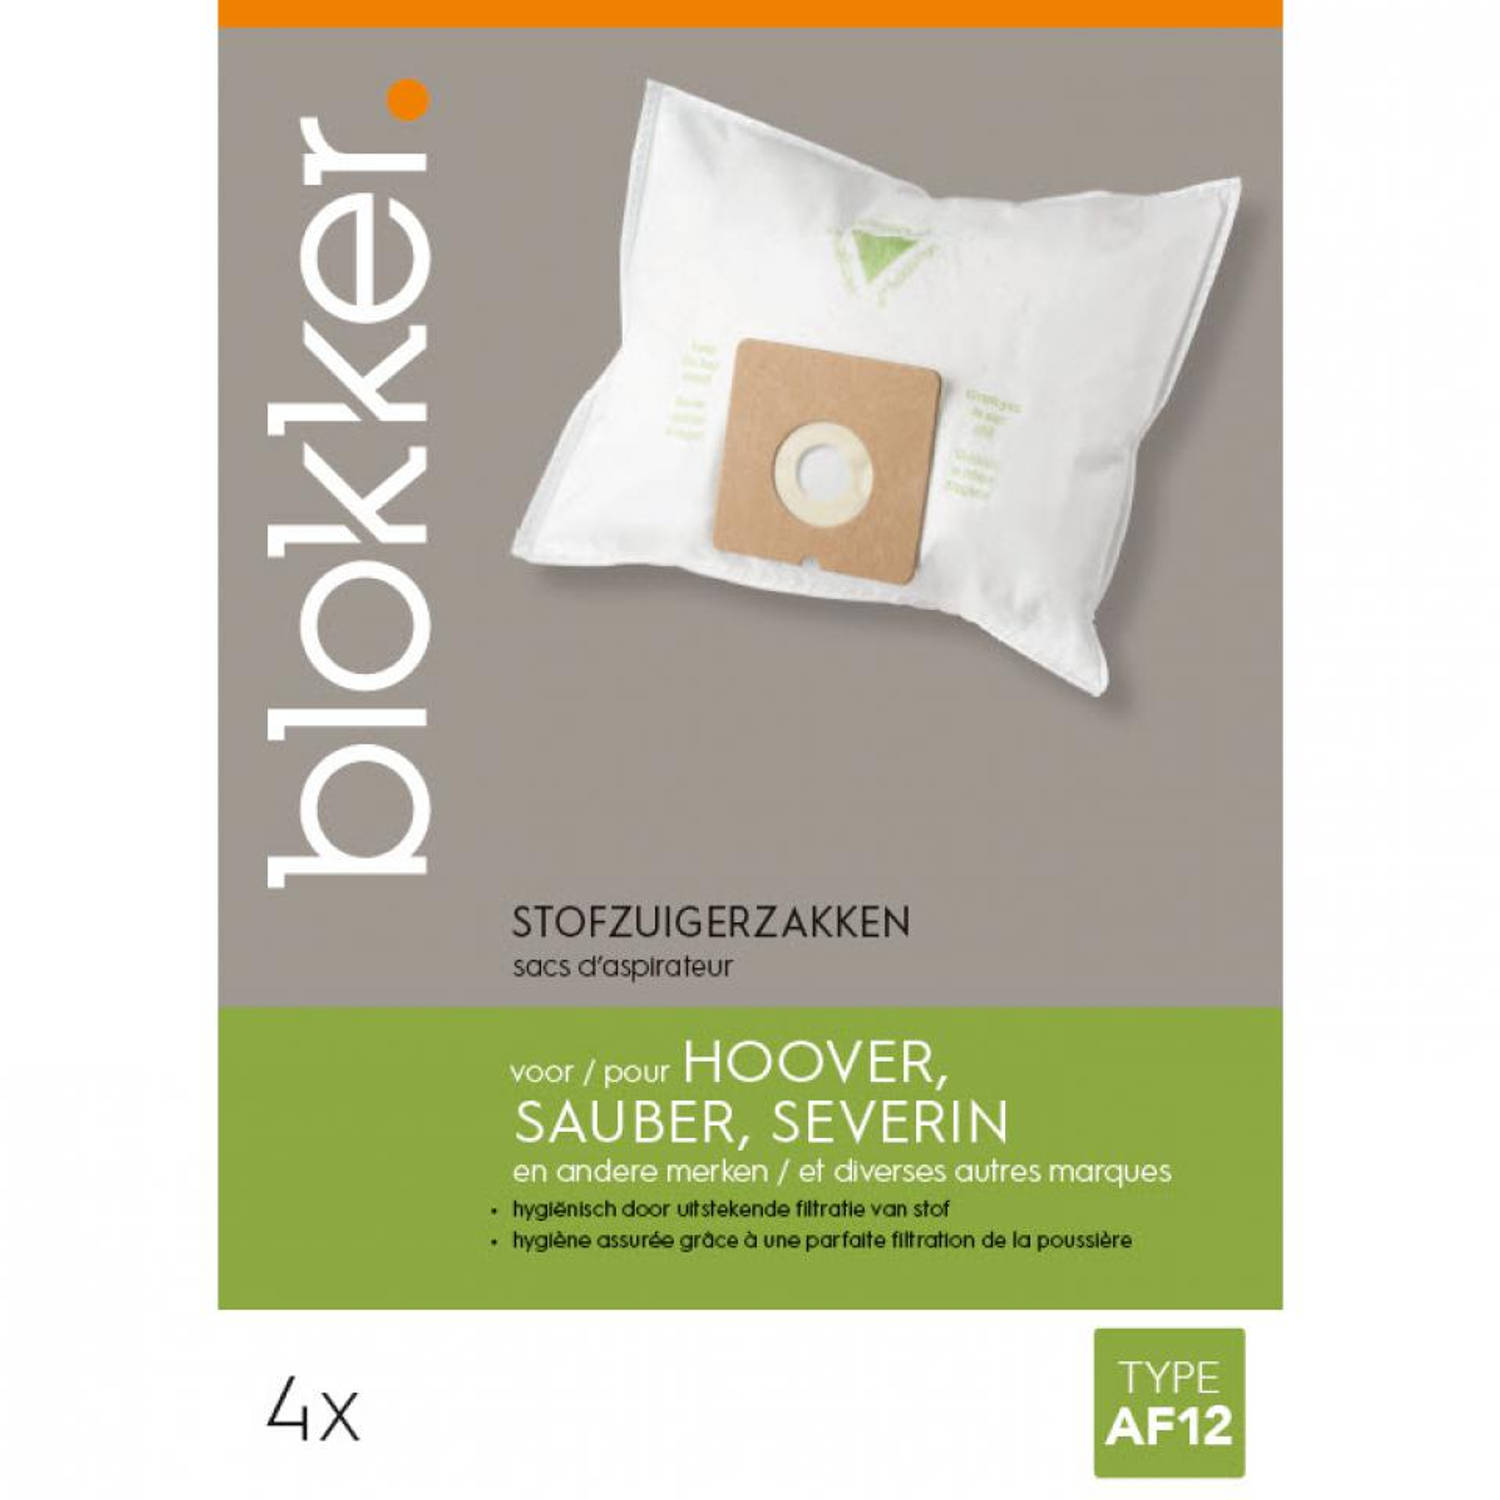 wetgeving schotel sleuf Blokker stofzuigerzak Hoover, Sauber, Severin af12 - 4 stuks | Blokker